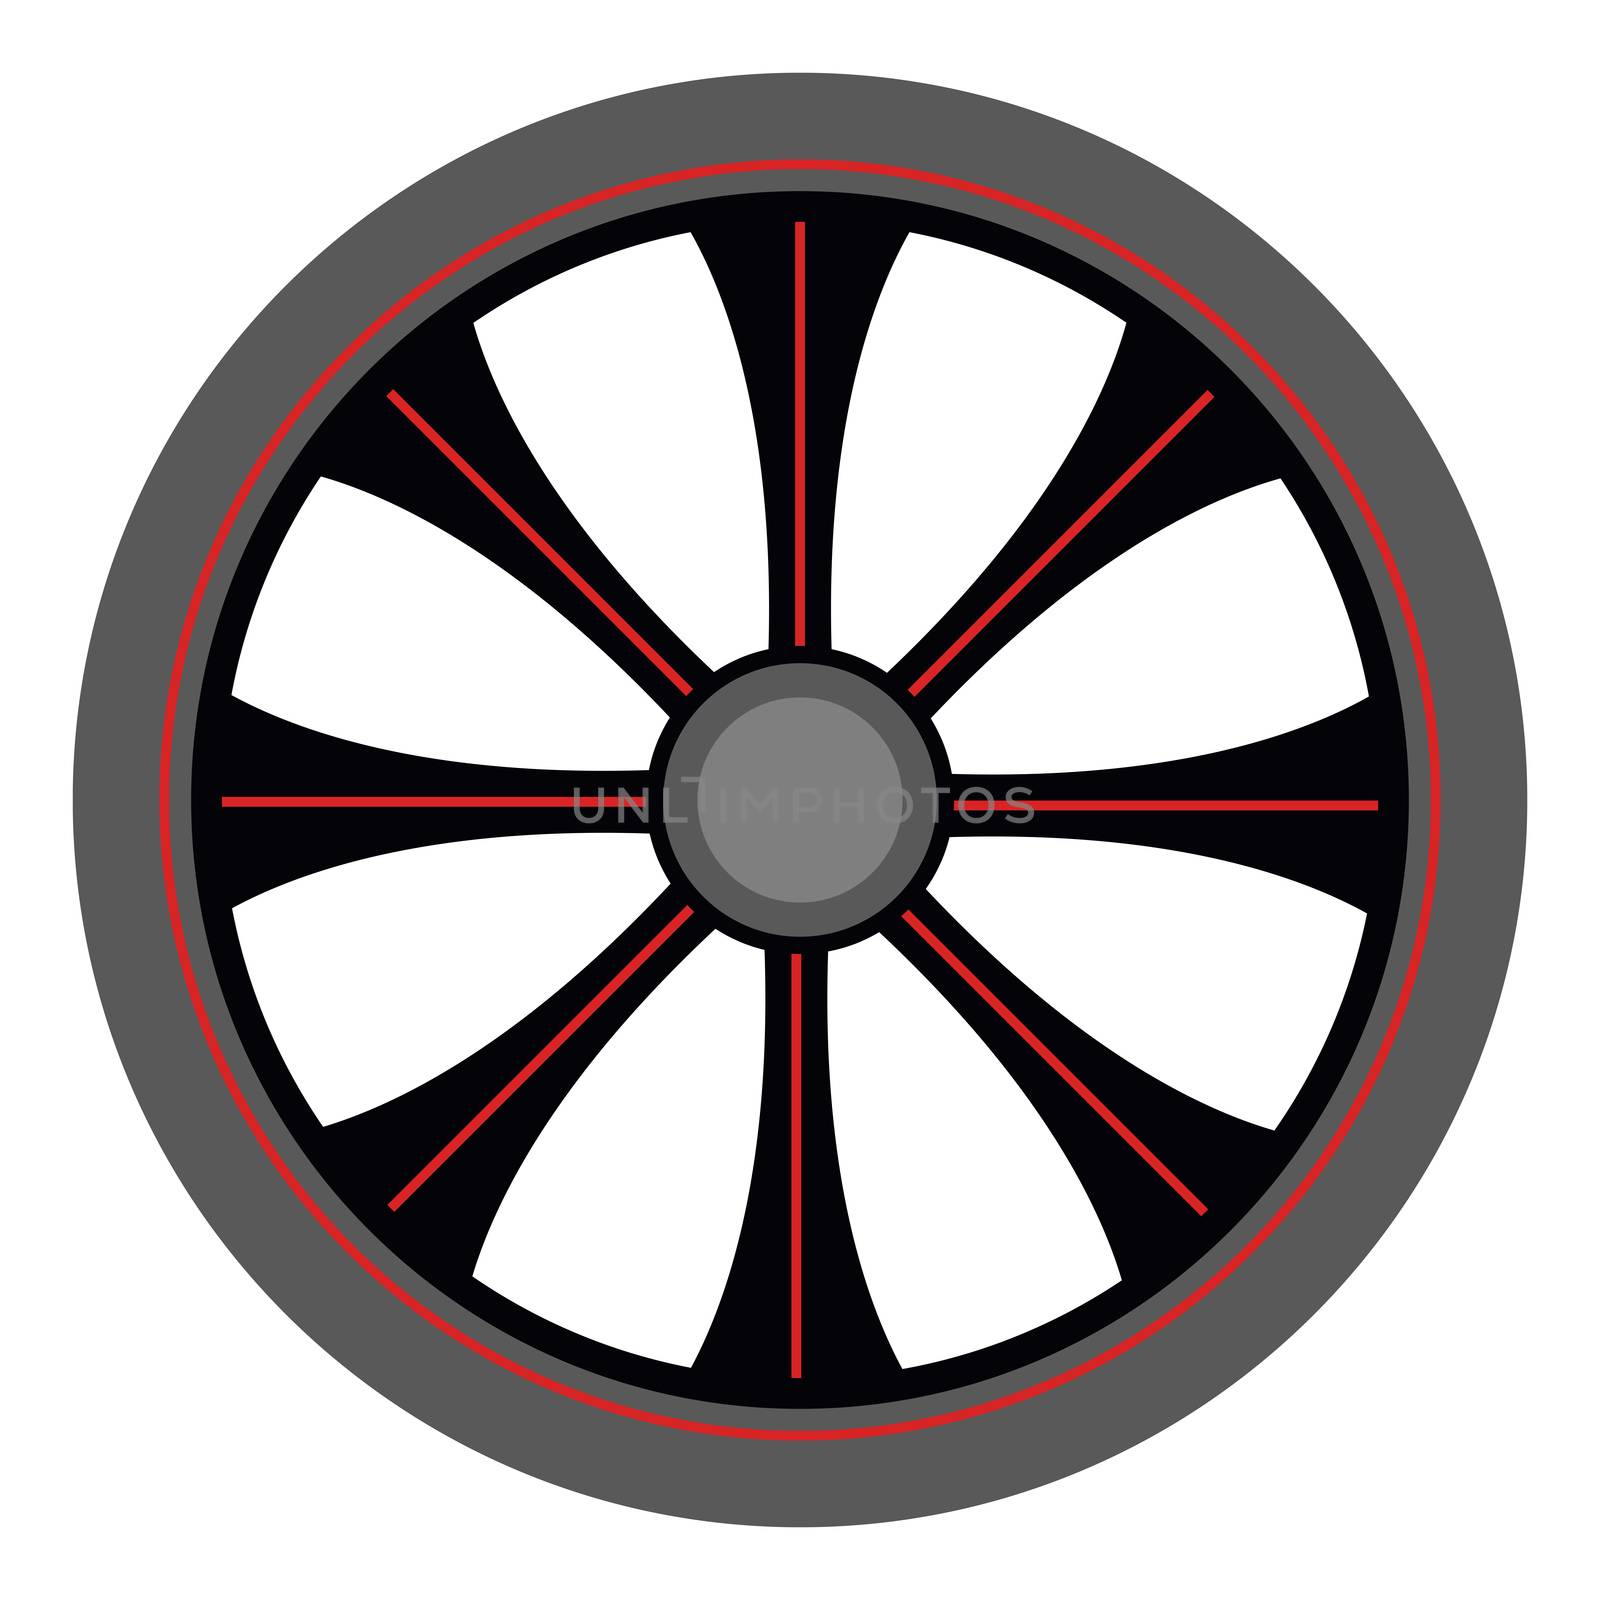 Alloy wheel, illustration, vector on white background by Morphart